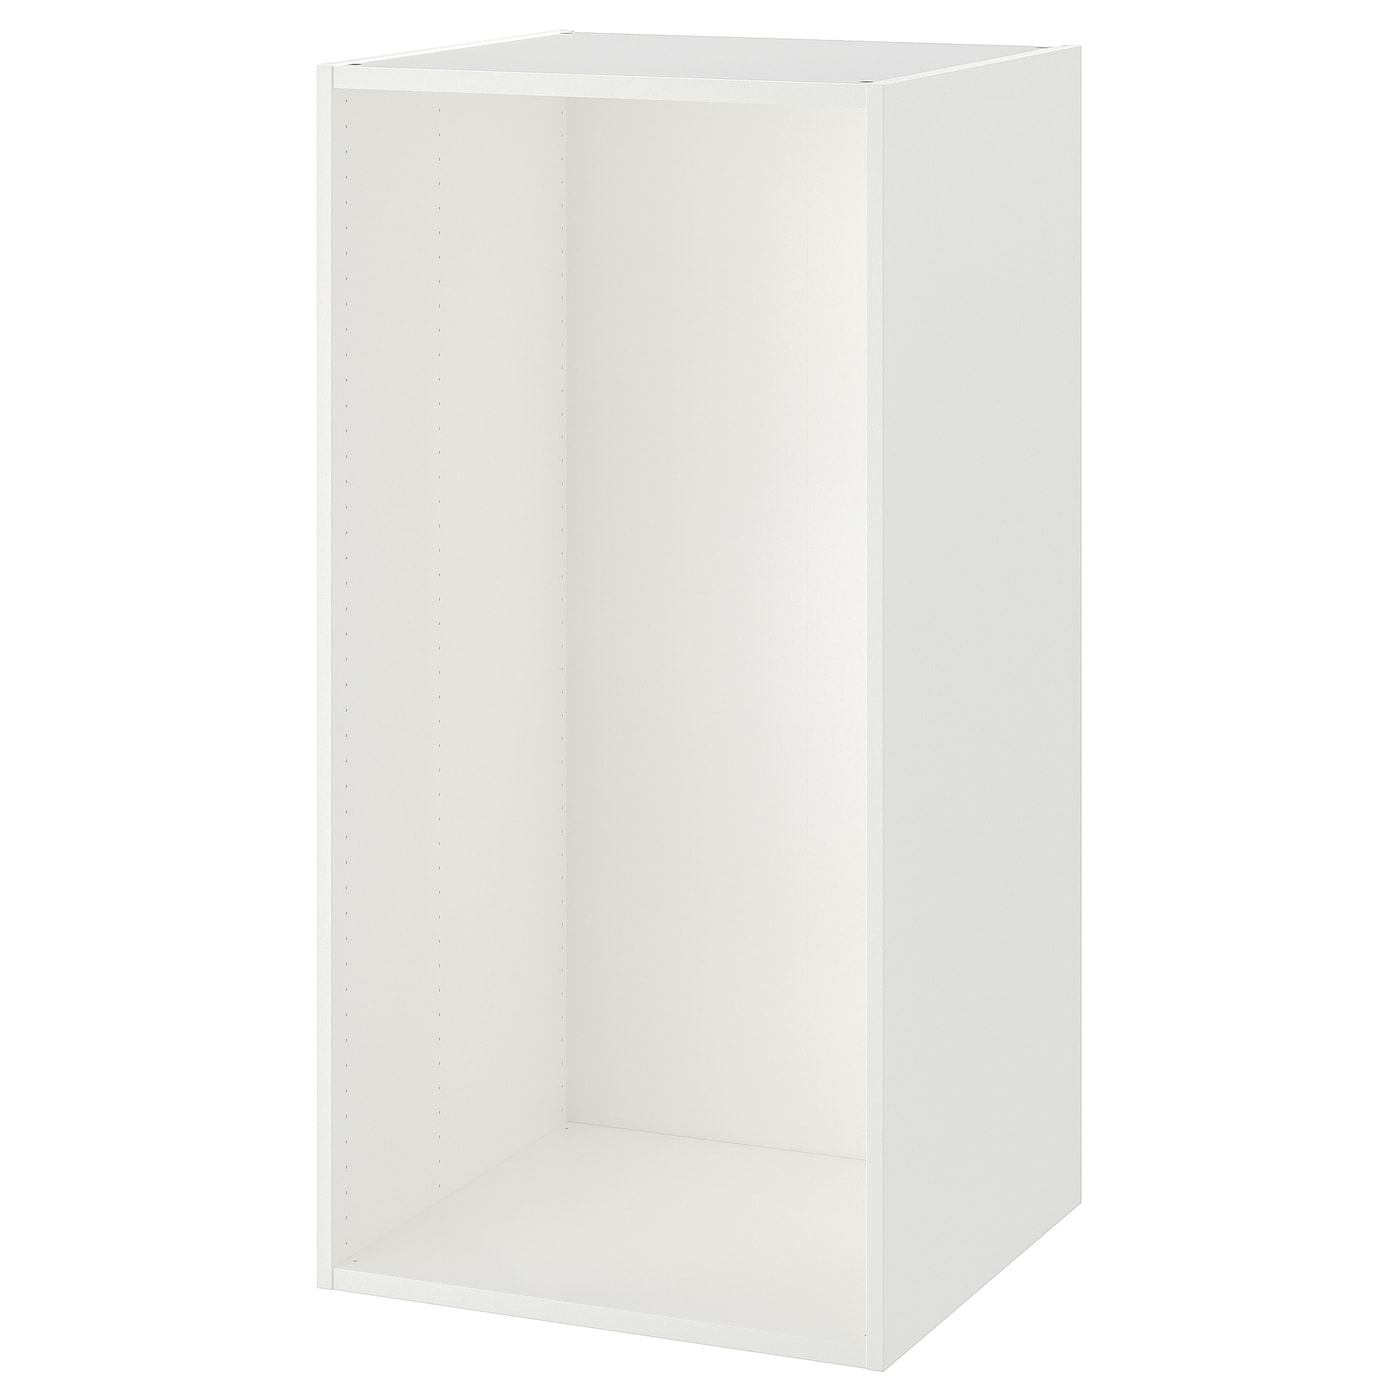 Каркас гардероба - PLATSA IKEA/ПЛАТСА ИКЕА, 55х60х120 см, белый